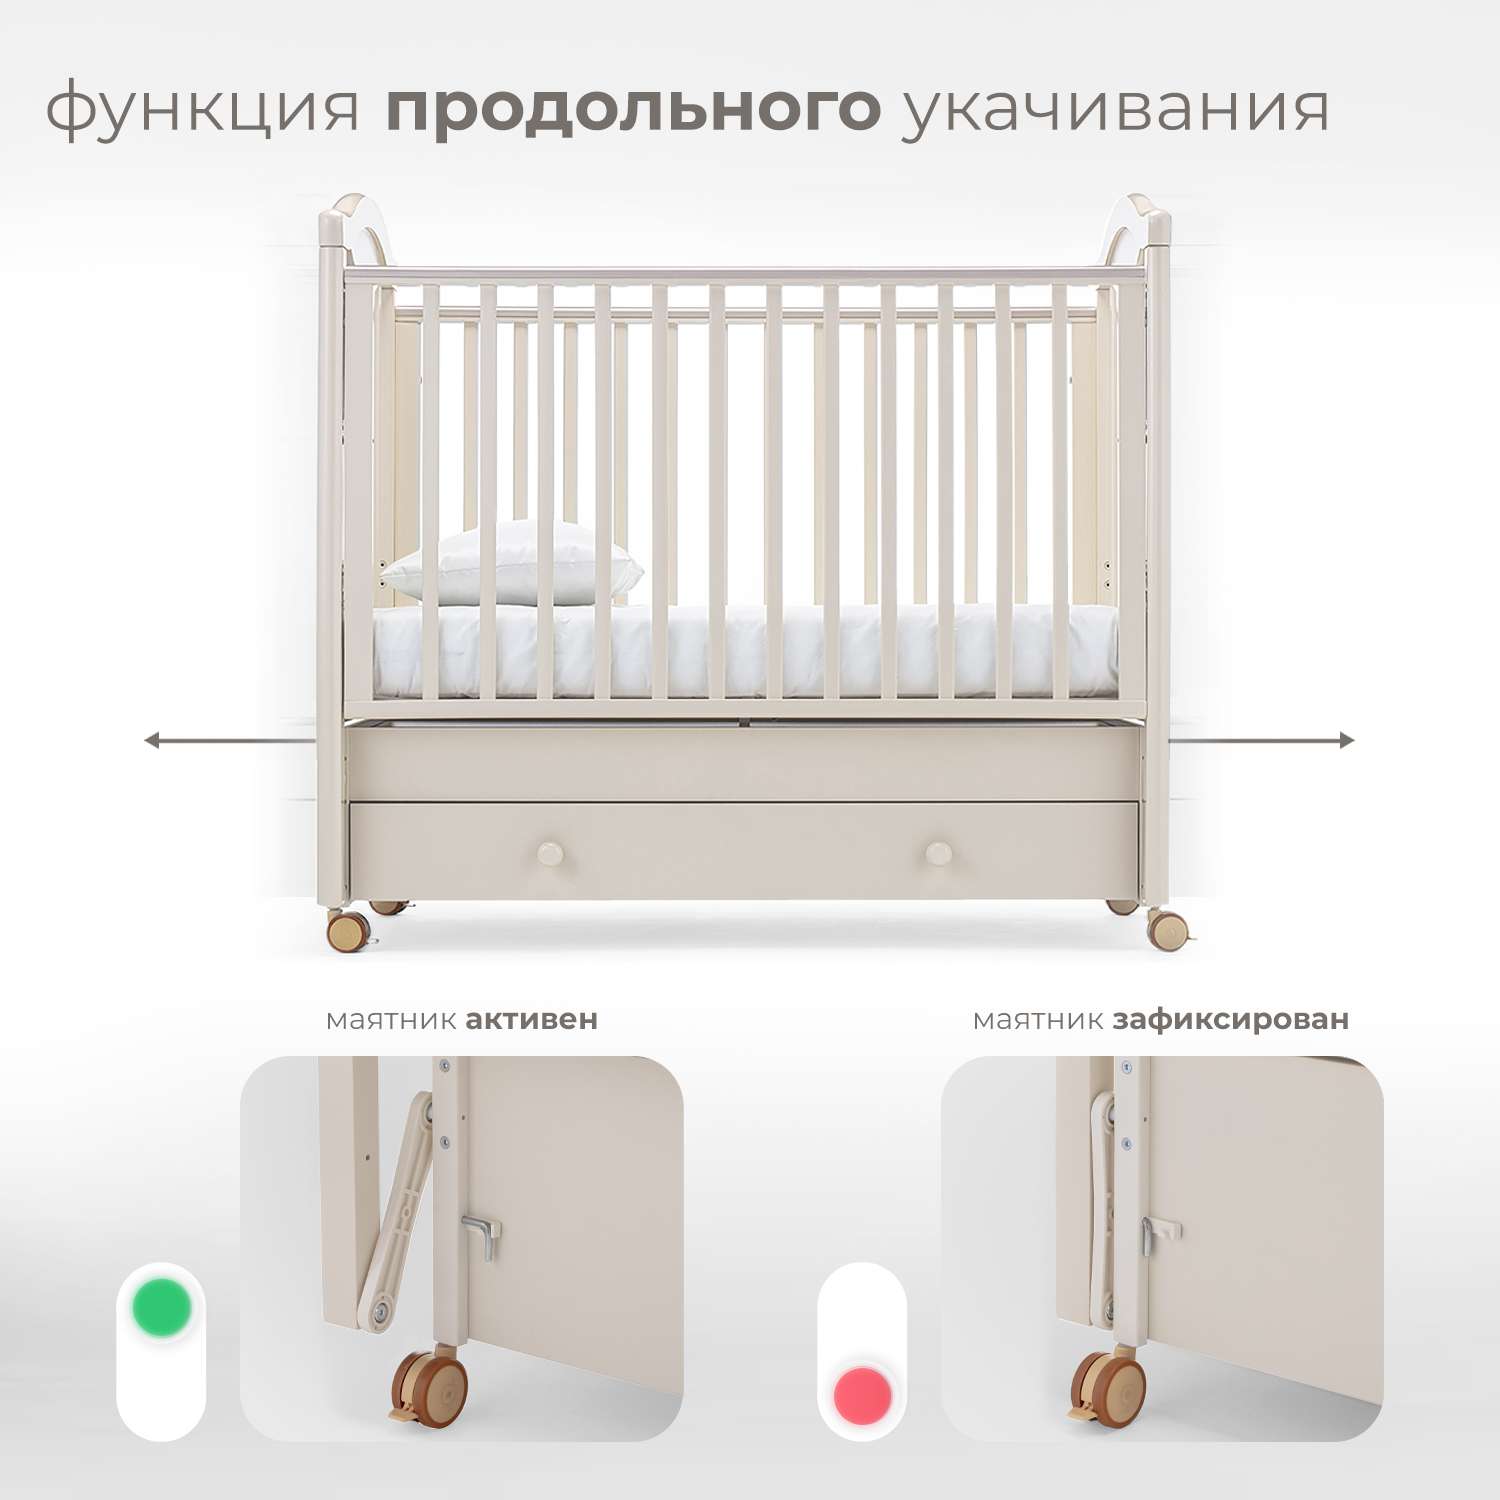 Детская кроватка Nuovita Lusso Swing прямоугольная, продольный маятник (слоновая кость) - фото 4